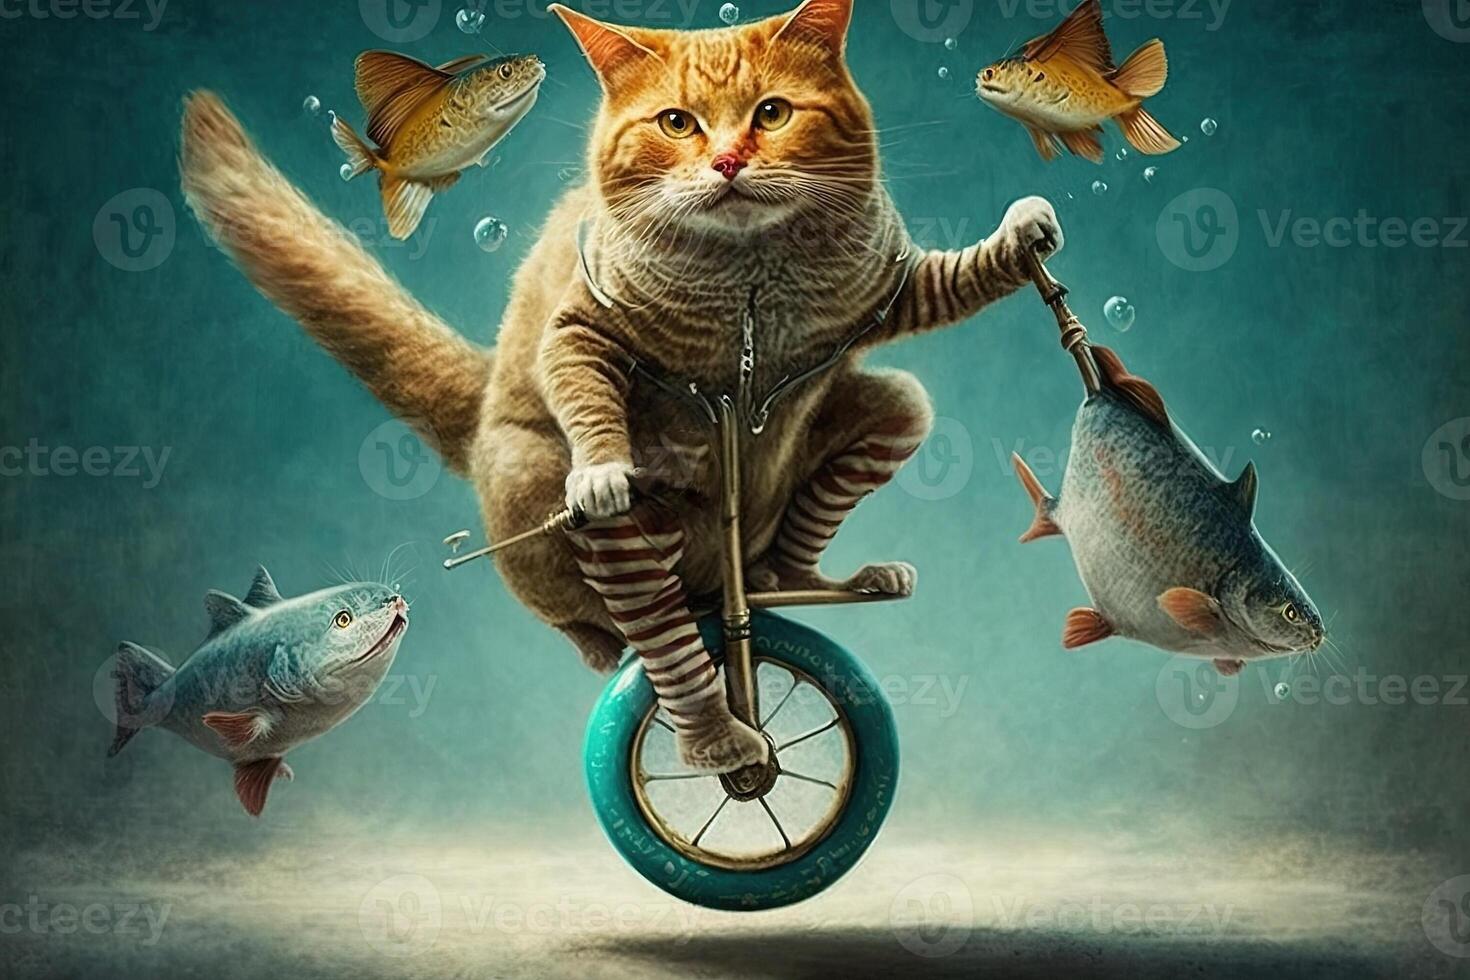 Cat riding unicycle illustration photo